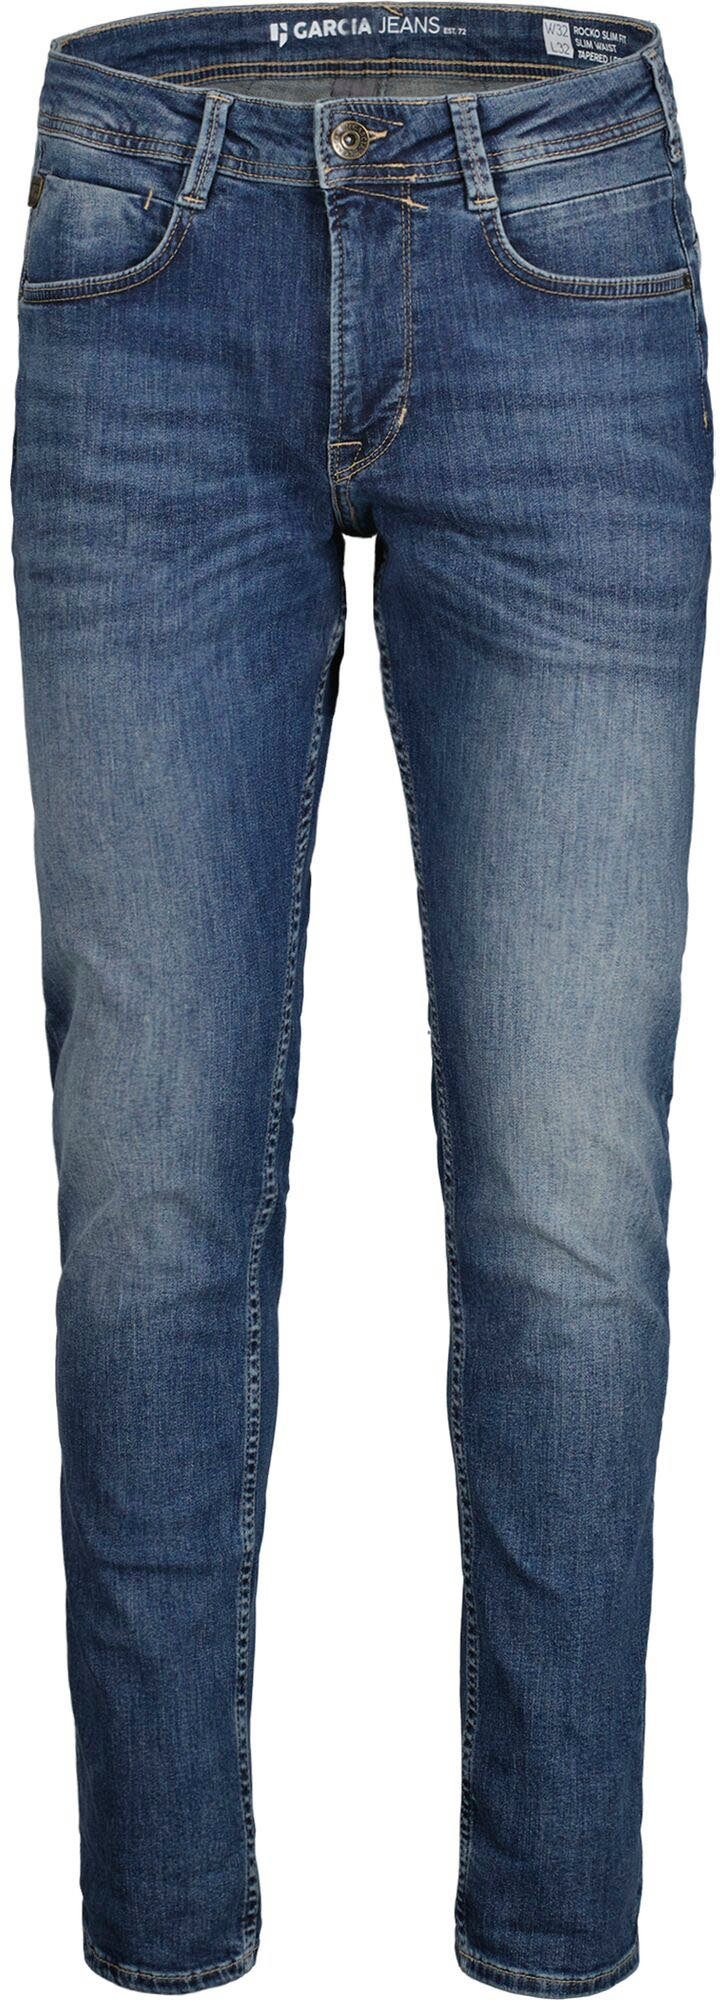 verschiedenen used Garcia Rocko medium in 5-Pocket-Jeans Waschungen